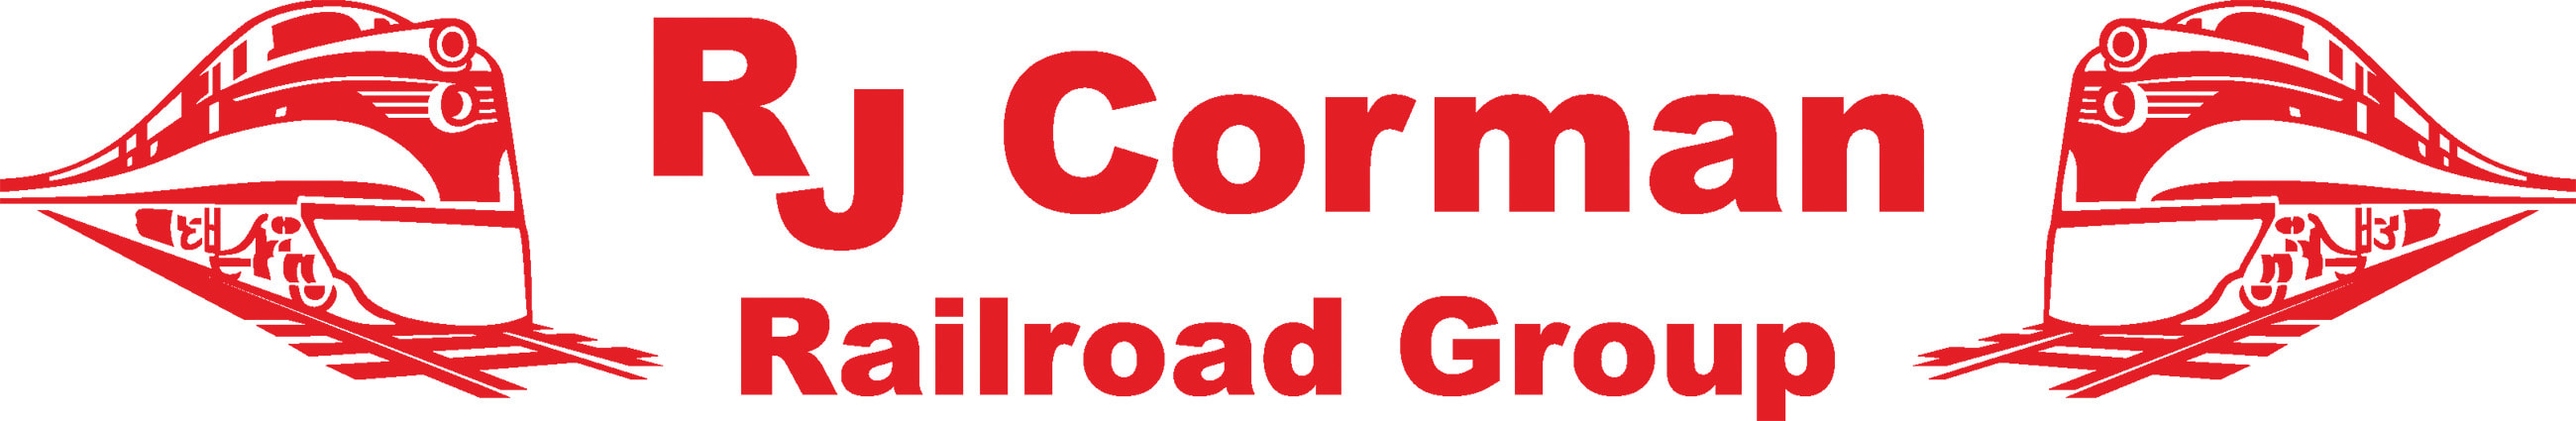 RJ Corman logo